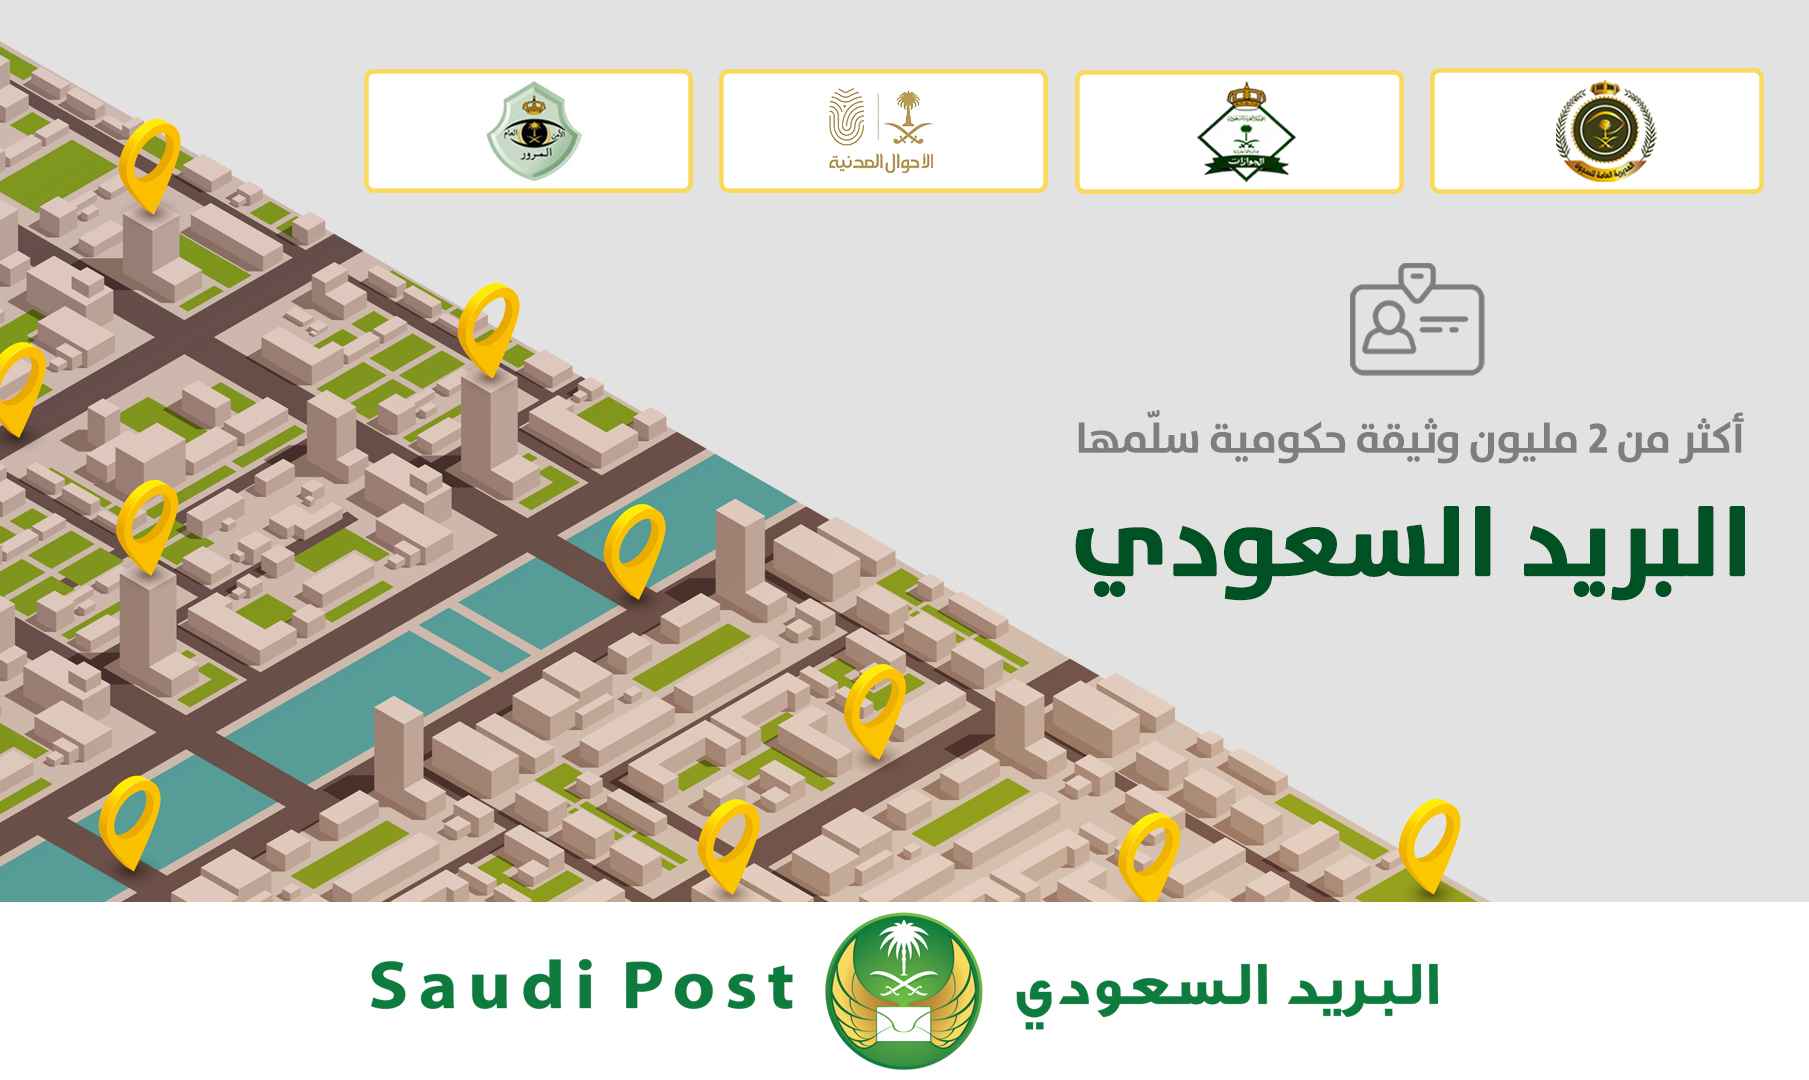  البريد السعودي يسلم أكثر من 2 مليون وثيقة حكومية خلال 3 سنوات